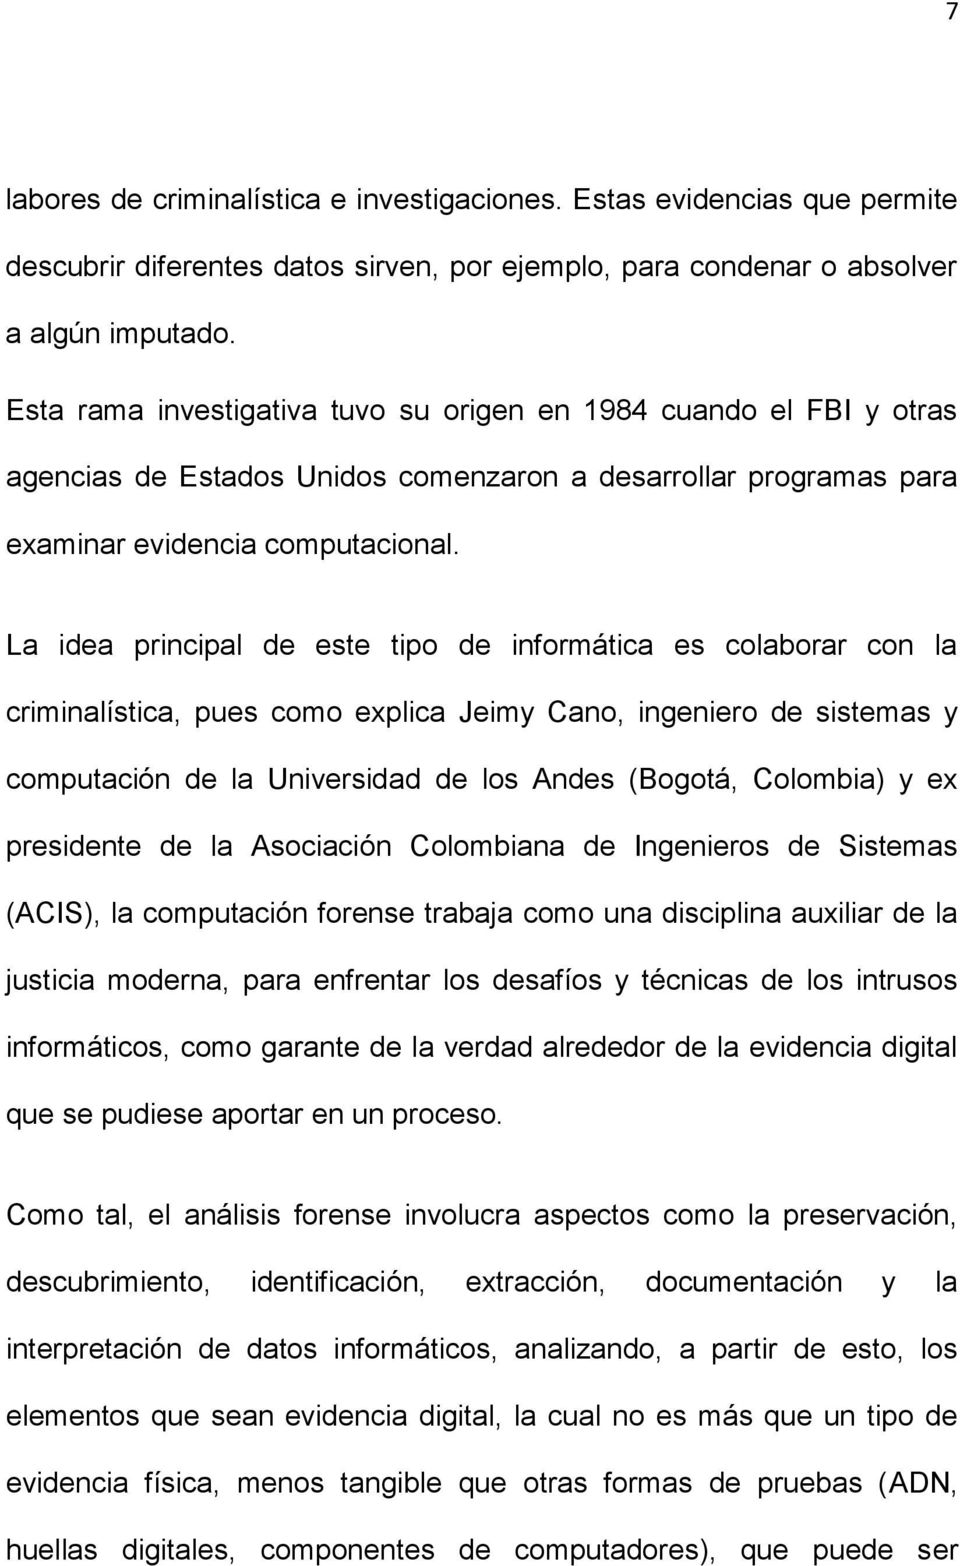 La idea principal de este tipo de informática es colaborar con la criminalística, pues como explica Jeimy Cano, ingeniero de sistemas y computación de la Universidad de los Andes (Bogotá, Colombia) y